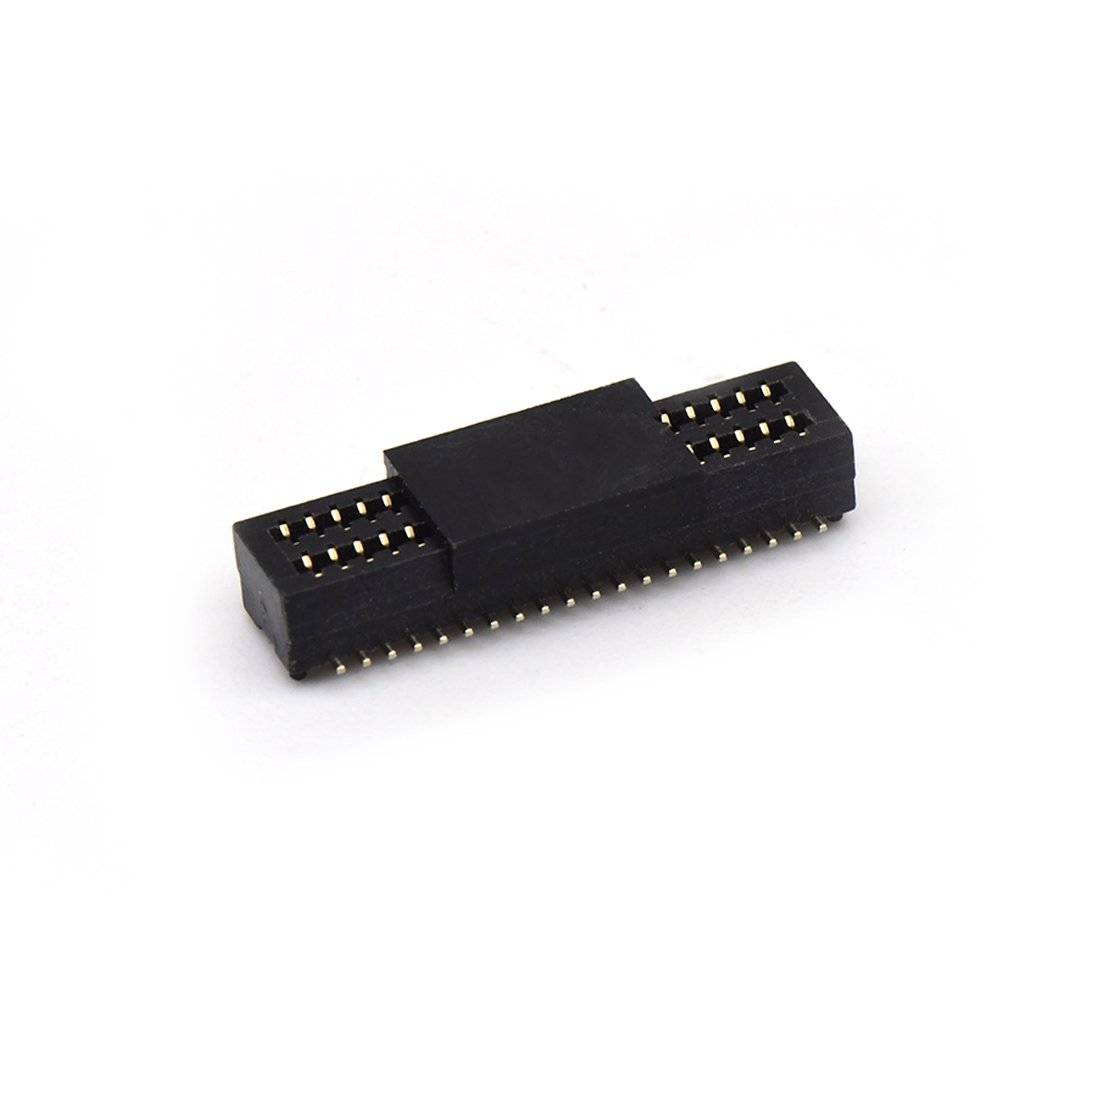 B0801板对板连接器Pitch 0.8 双槽H4.0 双排SMT型带柱母座 40Pin黑色 Gold flash